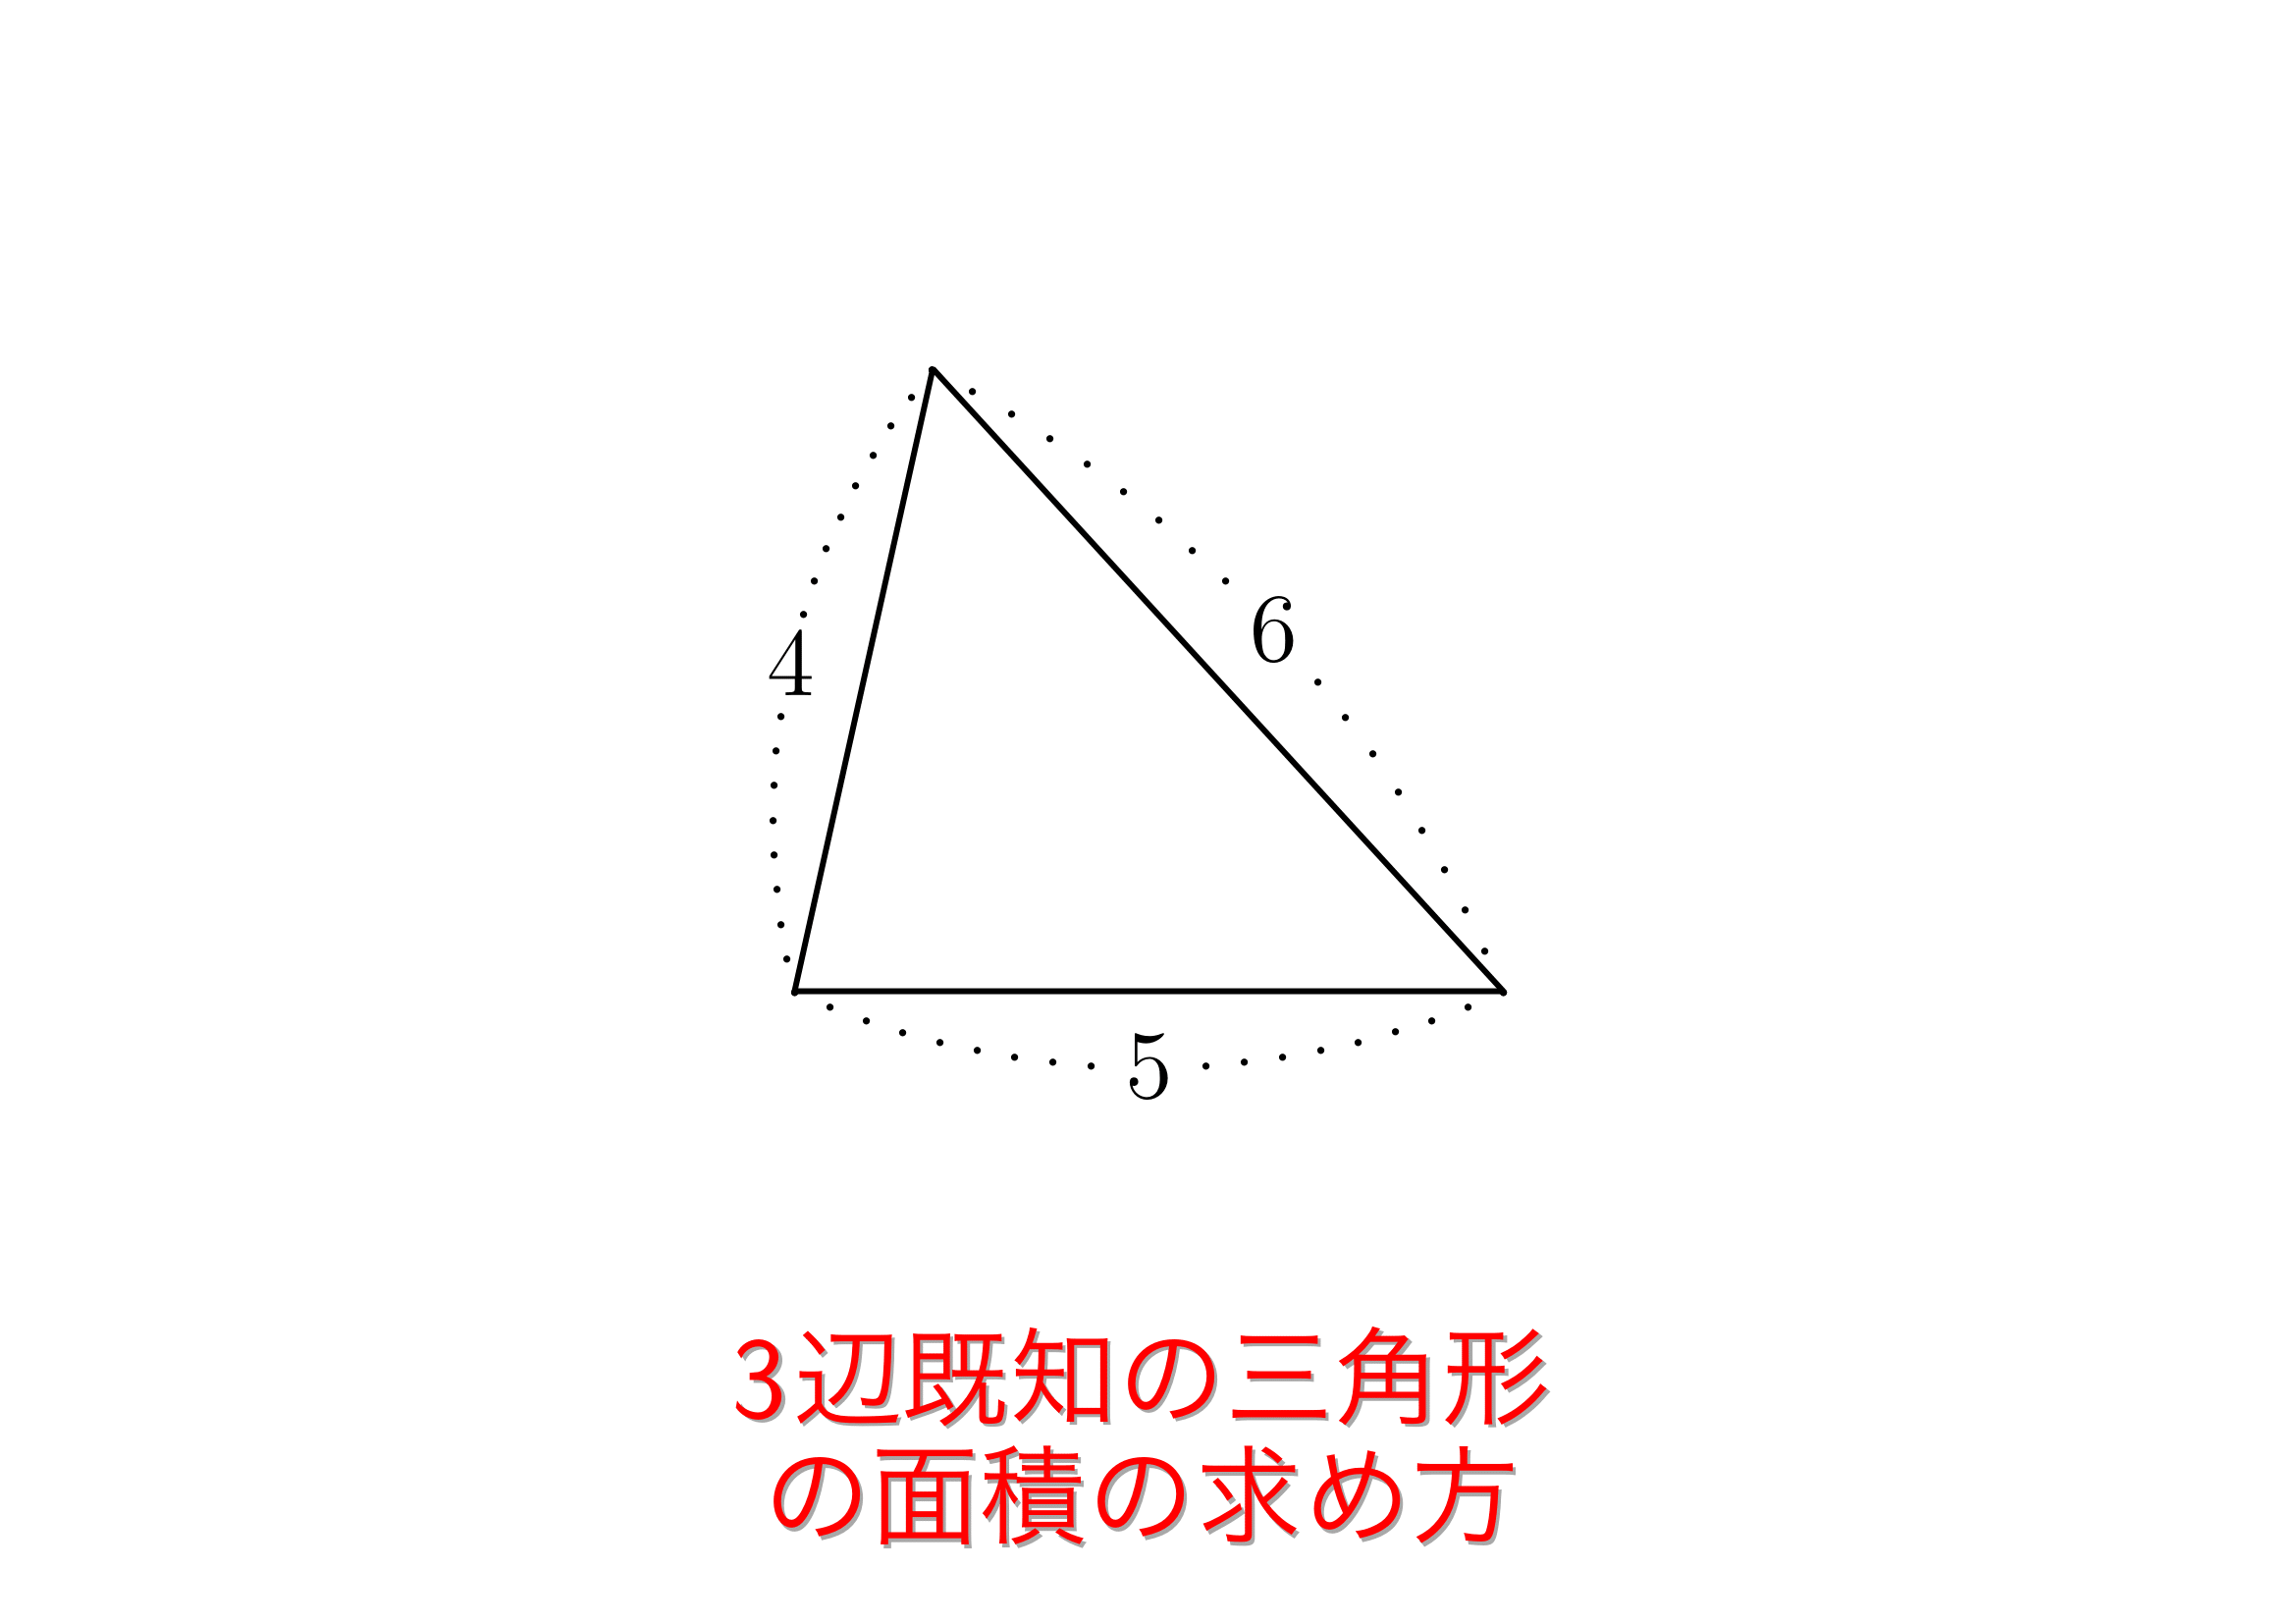 3辺既知の三角形の面積の求め方 おいしい数学